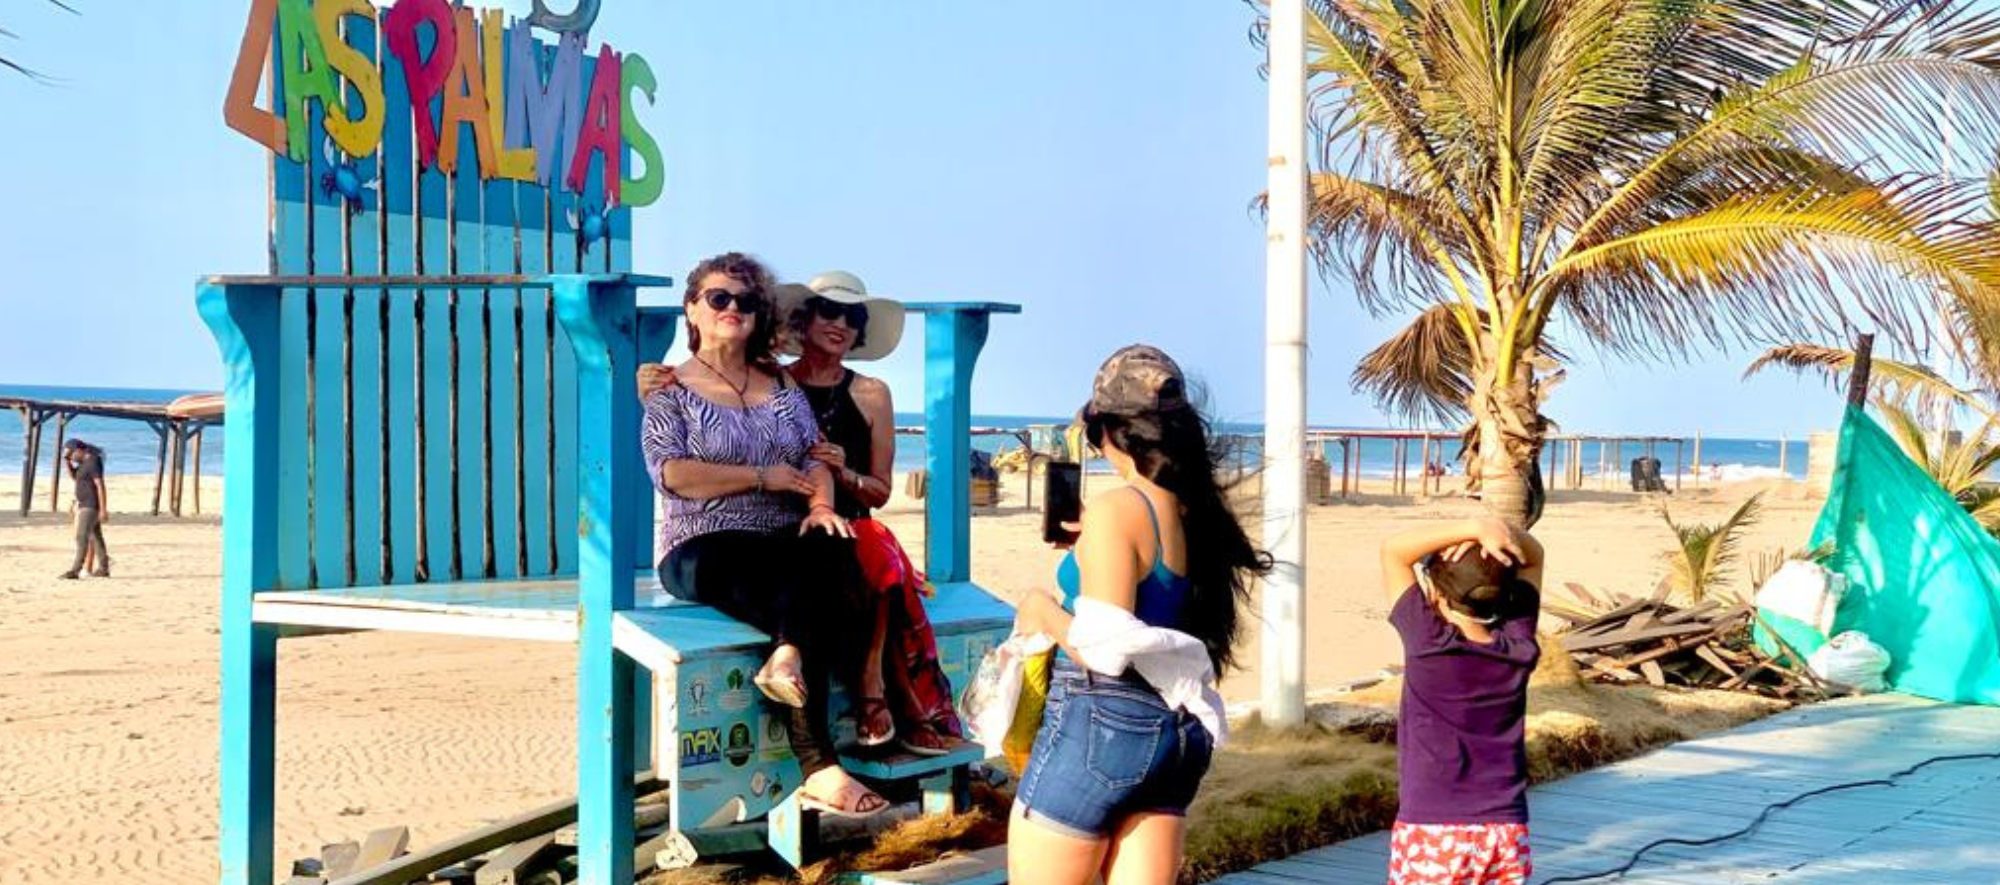 Esmeraldas espera turismo y garantiza seguridad